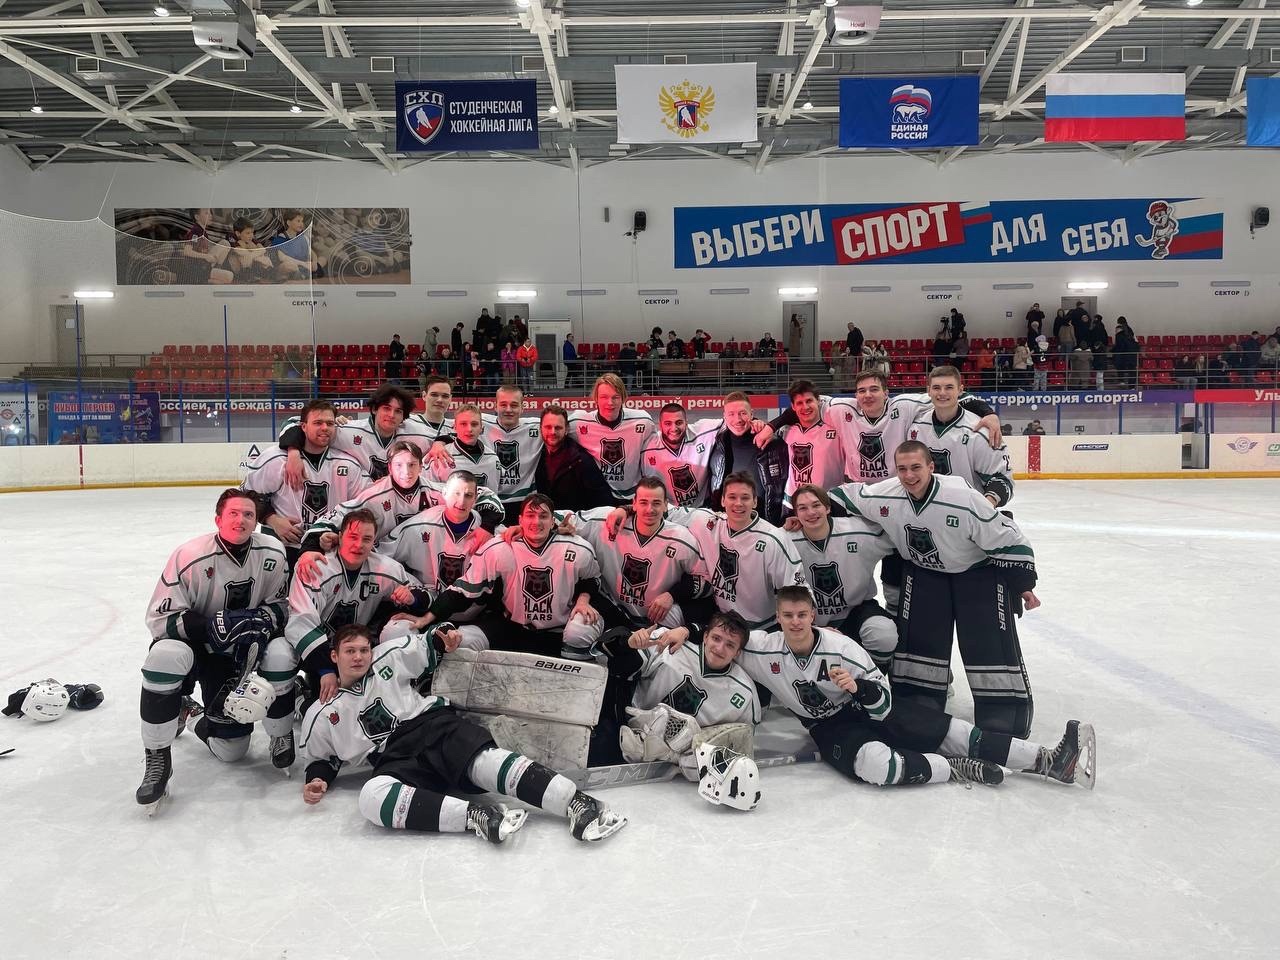 Наши хоккеисты — первая команда из Санкт-Петербурга, которая попала в финал восьми! 